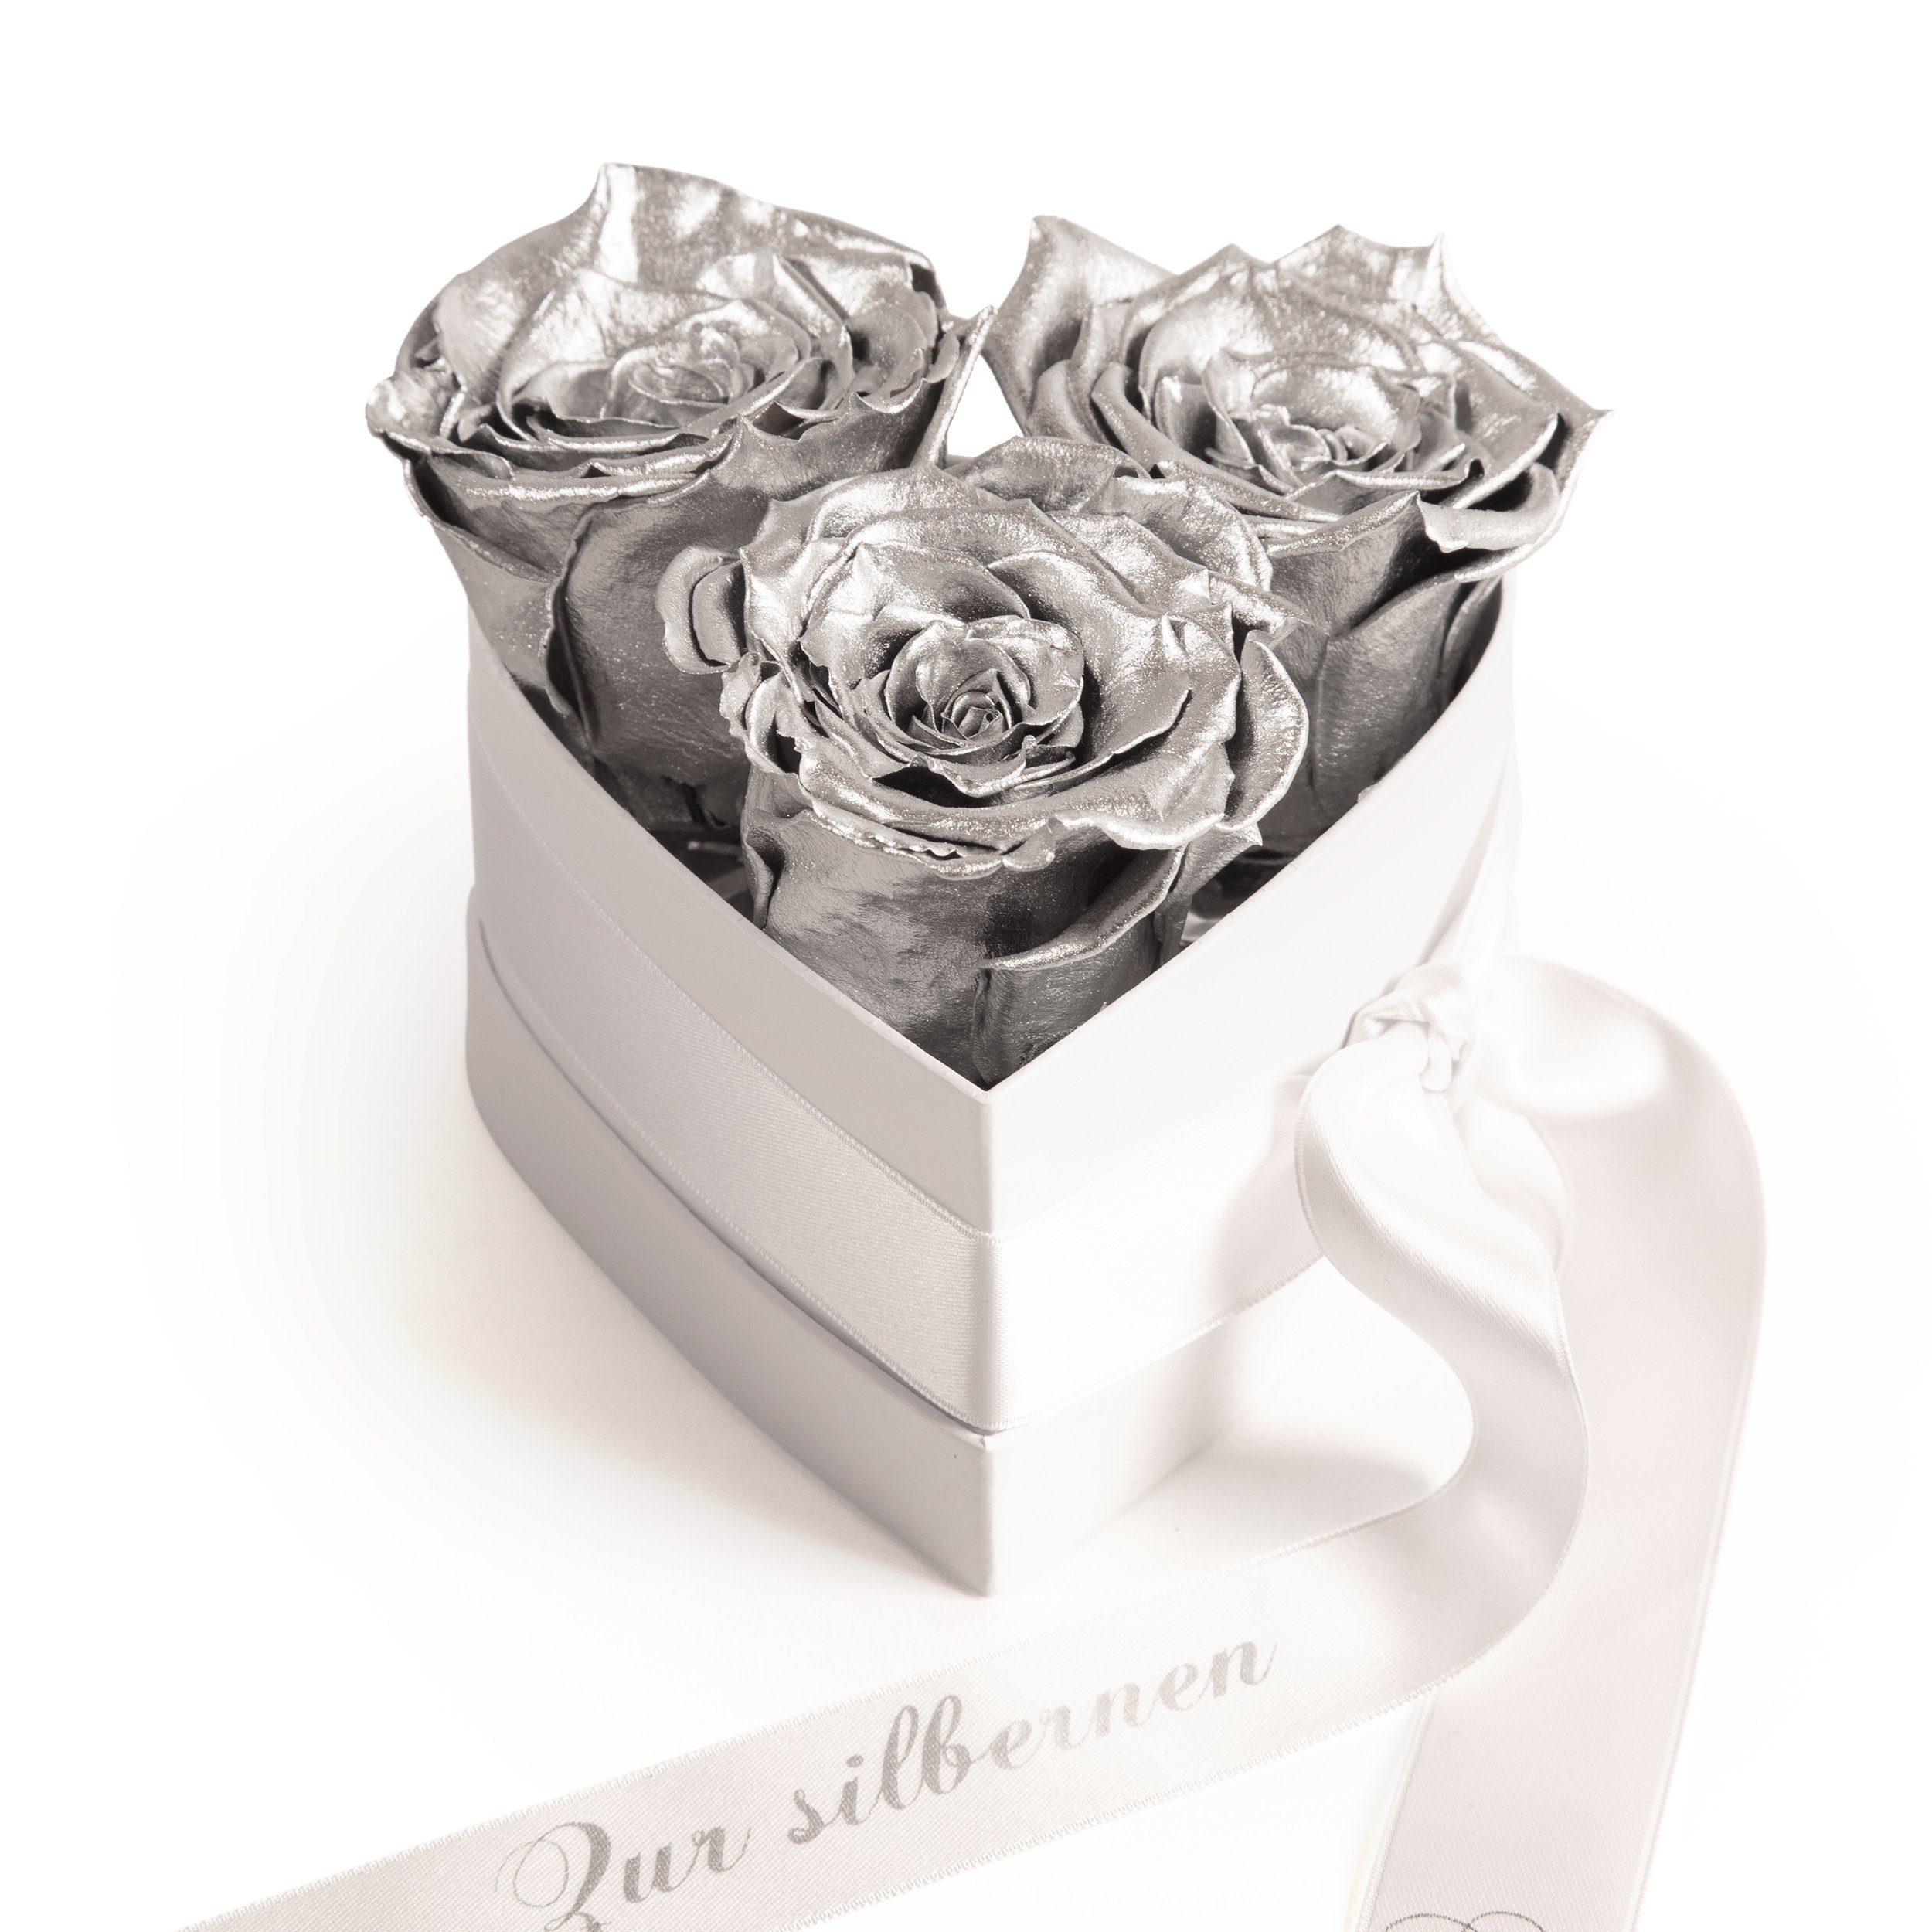 Kunstpflanze »Infinity Rosenbox Silberhochzeit Geschenk Herzform Rosenherz  konserviert Jubiläum 25 Jahre« Rosen, ROSEMARIE SCHULZ Heidelberg, Höhe 10  cm, haltbare Blumen online kaufen | OTTO